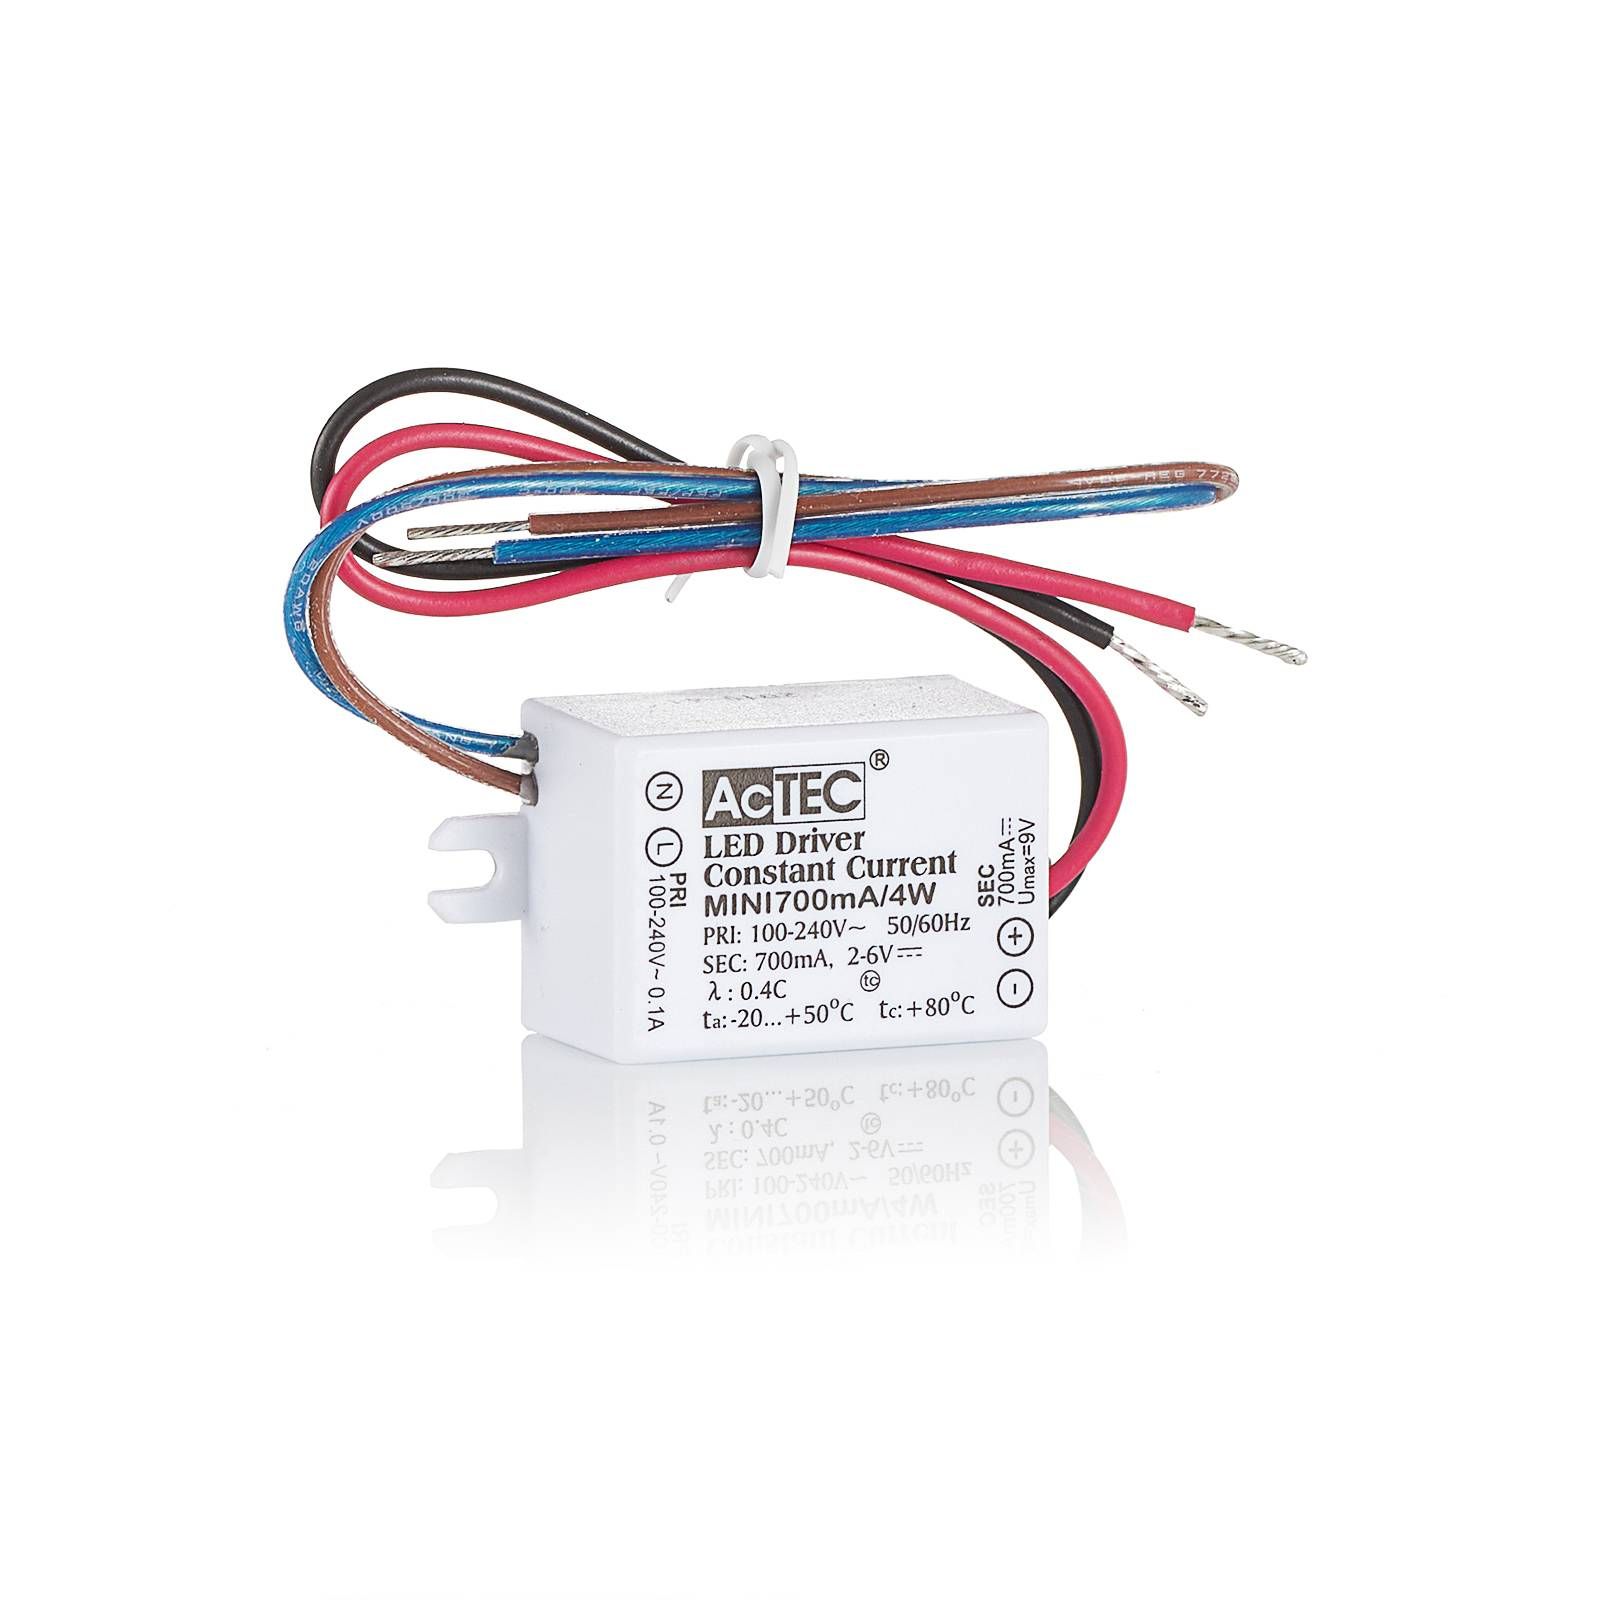 AcTEC Mini LED budič CC 350 mA, 4 W, IP65, plast, P: 5.3 cm, L: 2.7 cm, K: 2.1cm